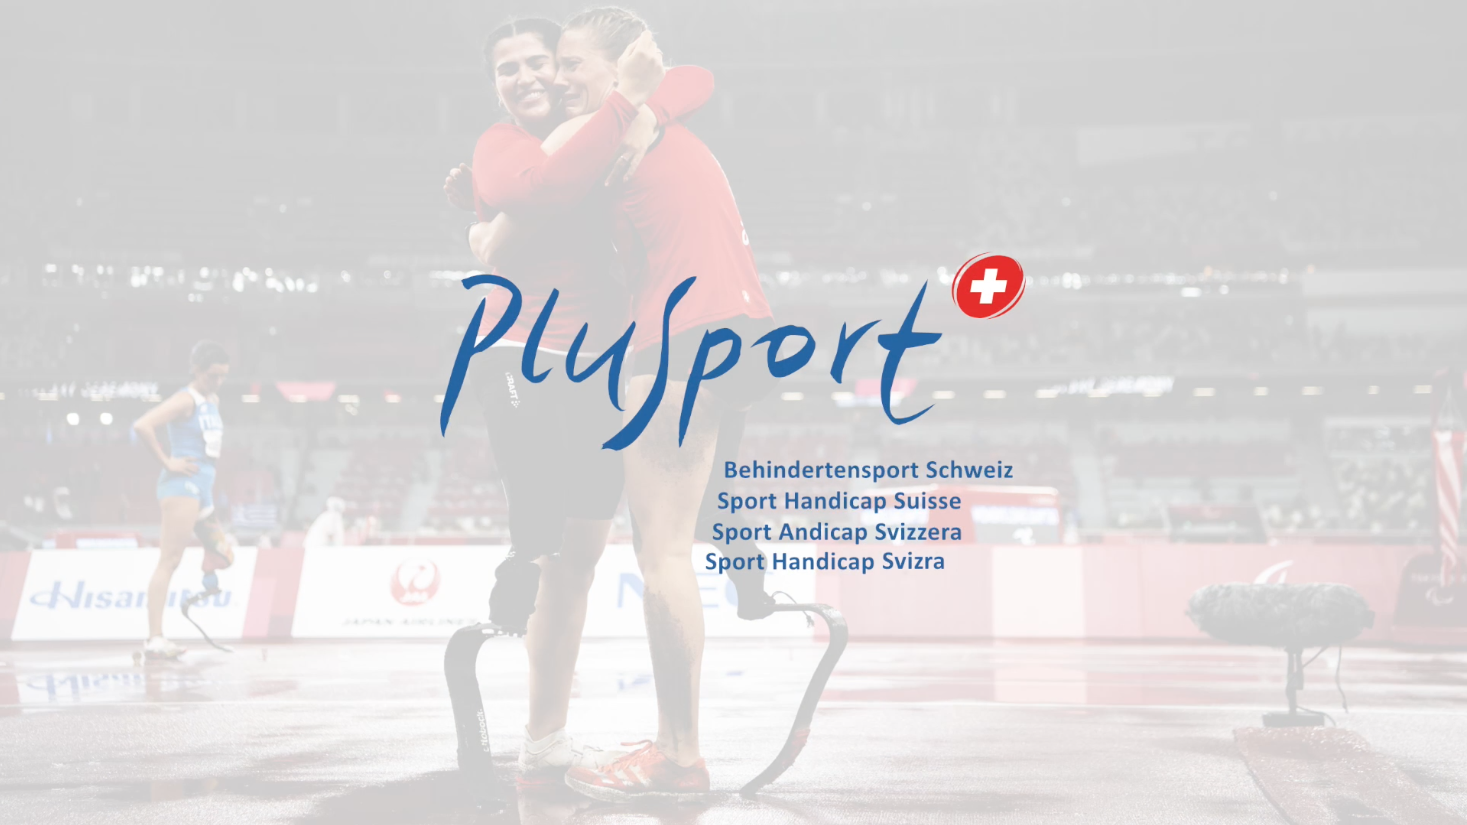 Im Vordergrund ist das Logo von "PlusSport - Behindertensport Schweiz" zu sehen. Leicht transparent im Hintergrund sind zwei sich umarmende Sportler*innen zu sehen.